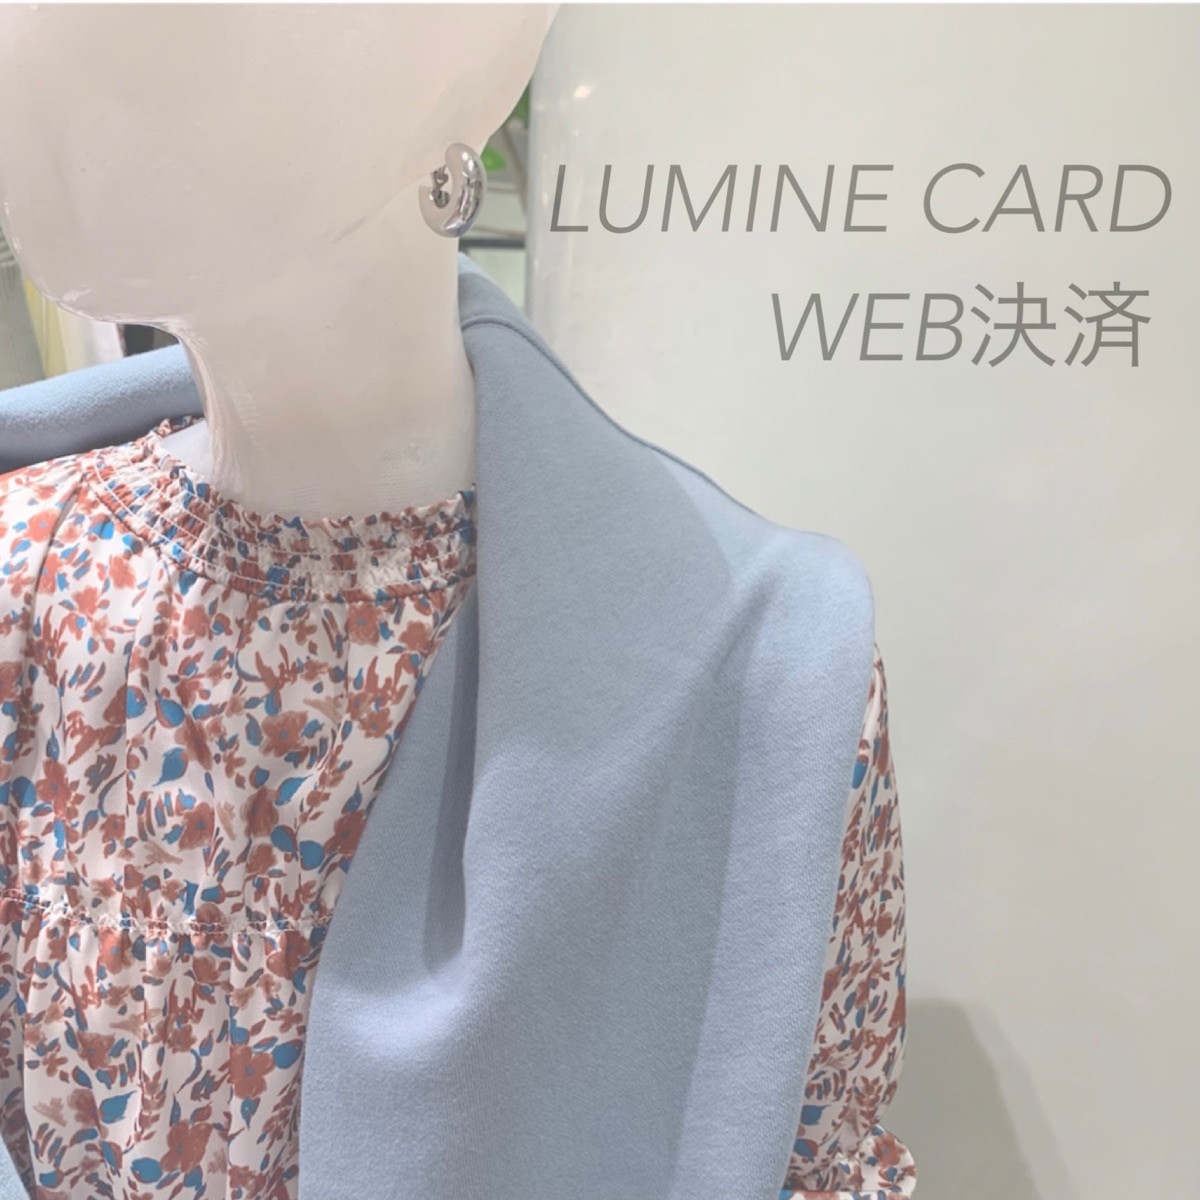 LUMINE CARD WEB決済のお知らせ